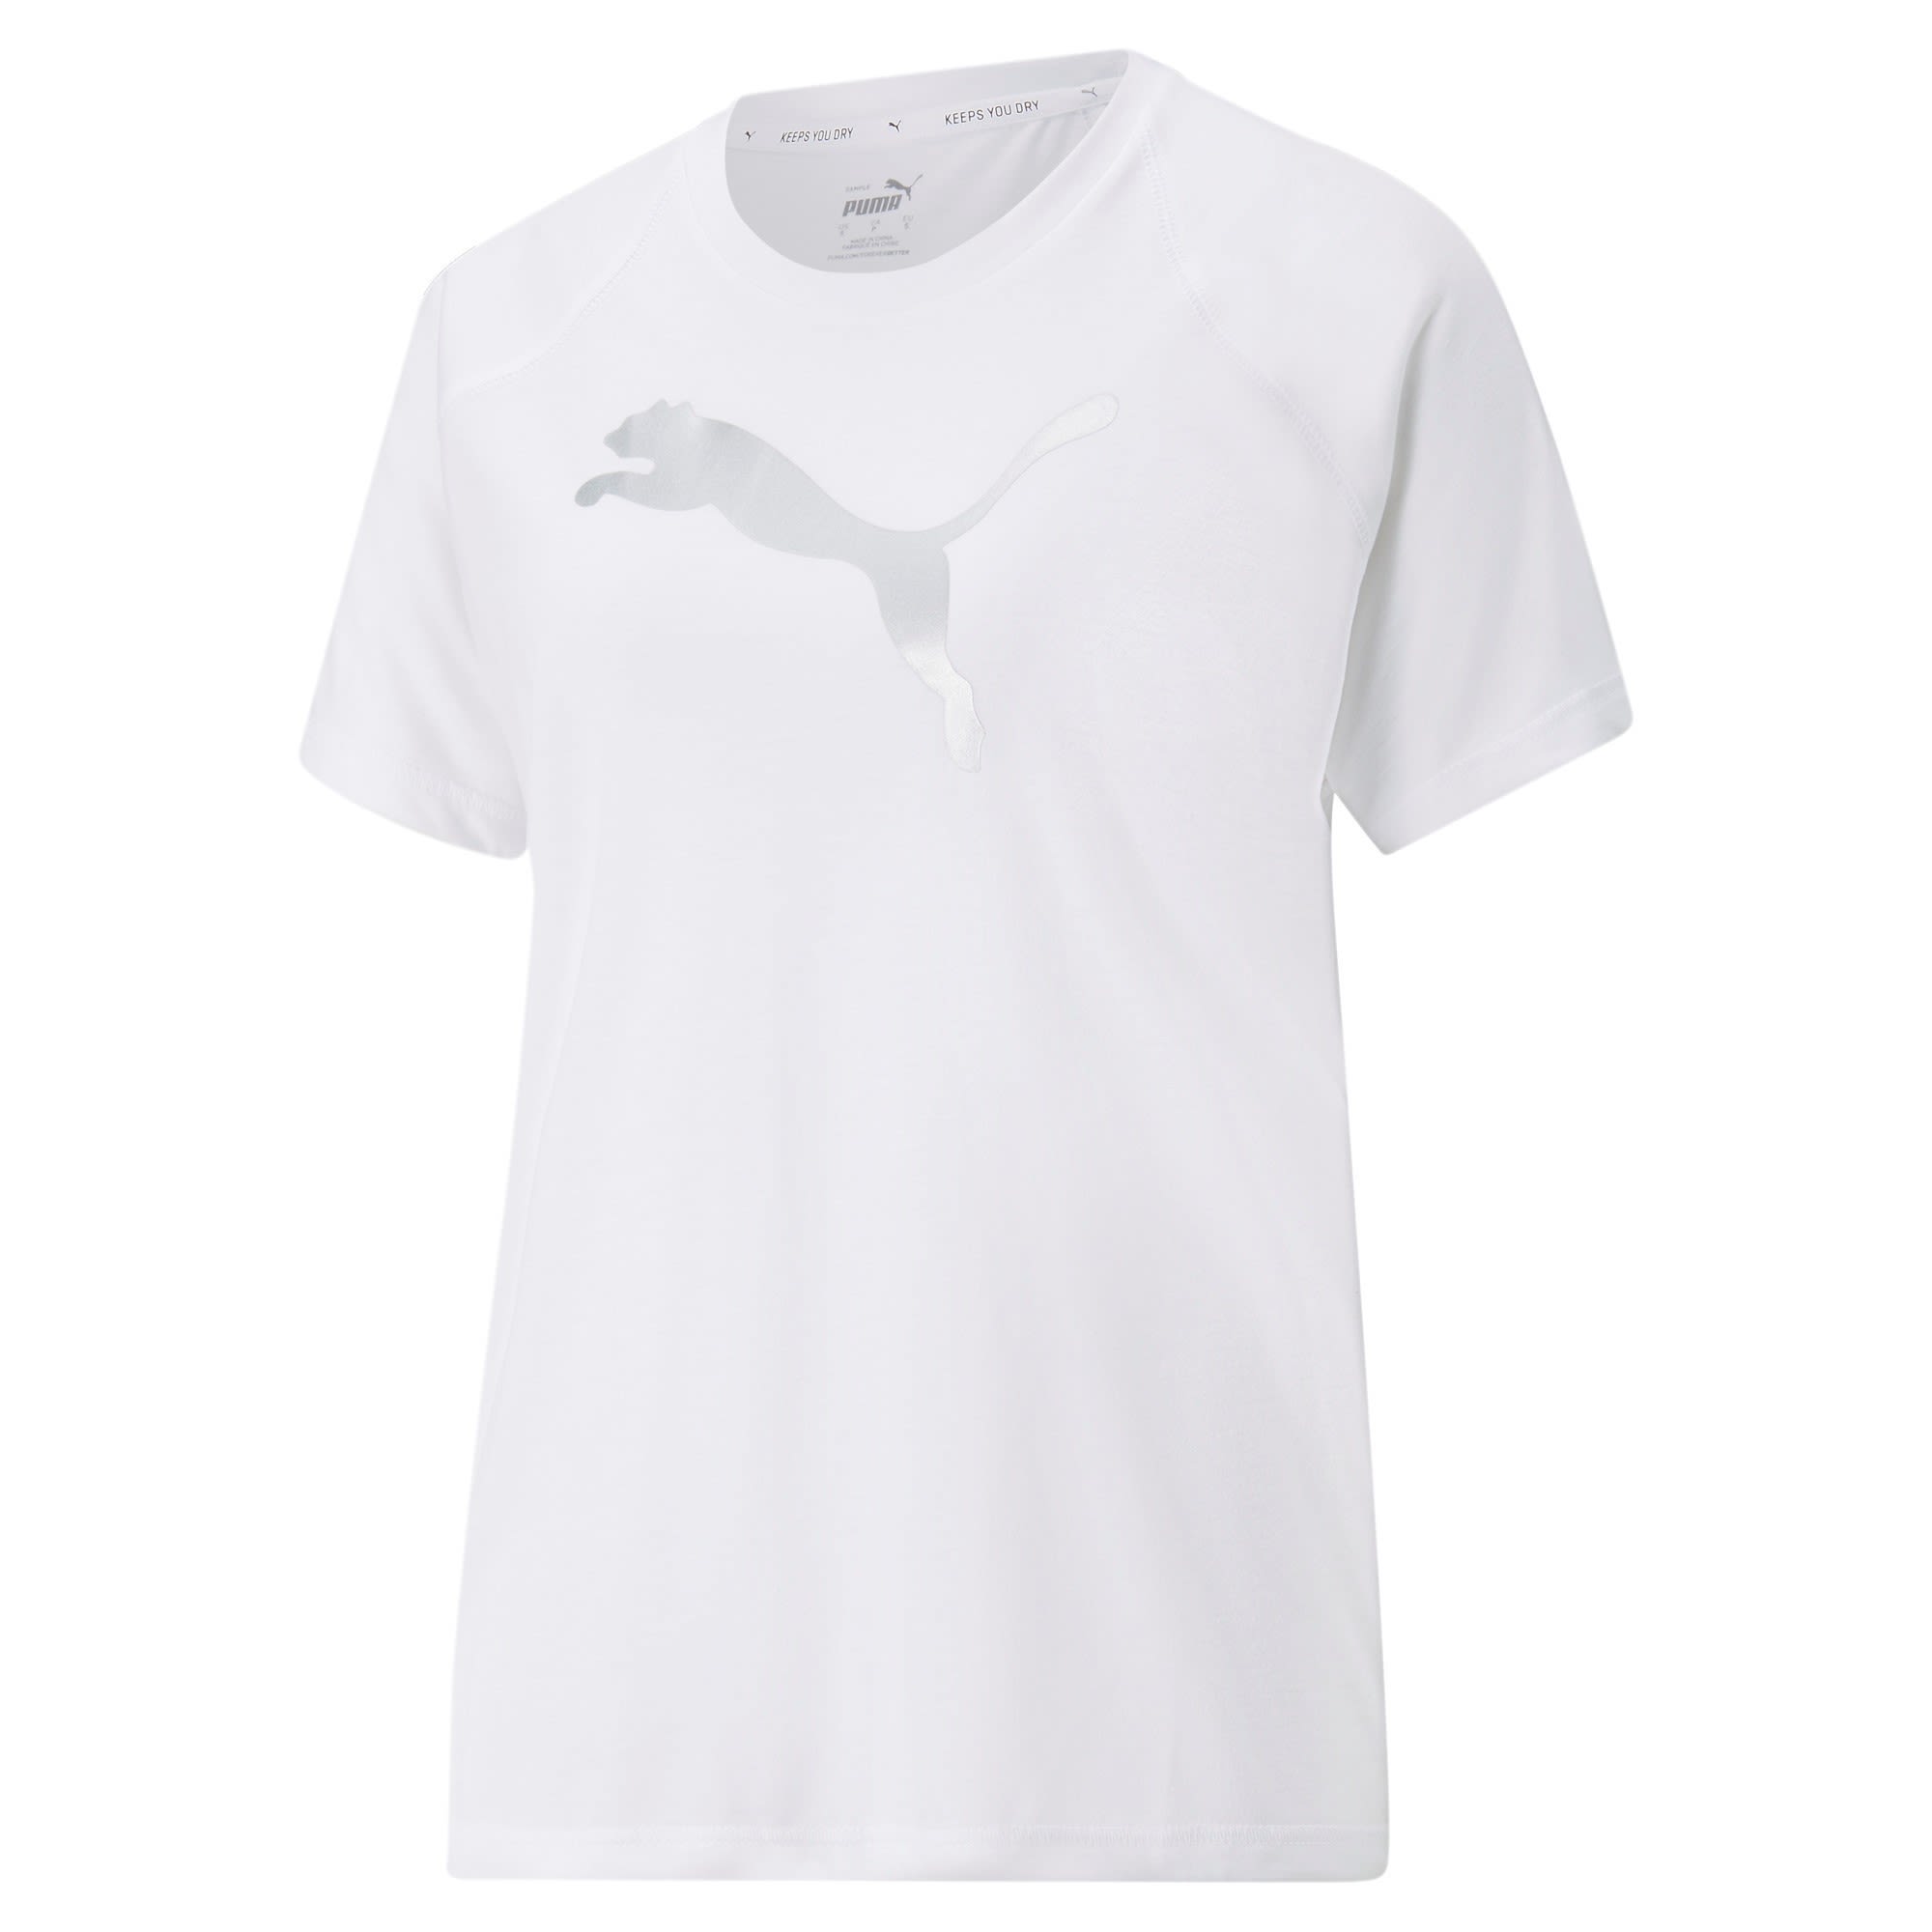 Puma Evostripe Tee Weiss- Female Kurzarm-Shirts- Grsse XL - Farbe Puma White